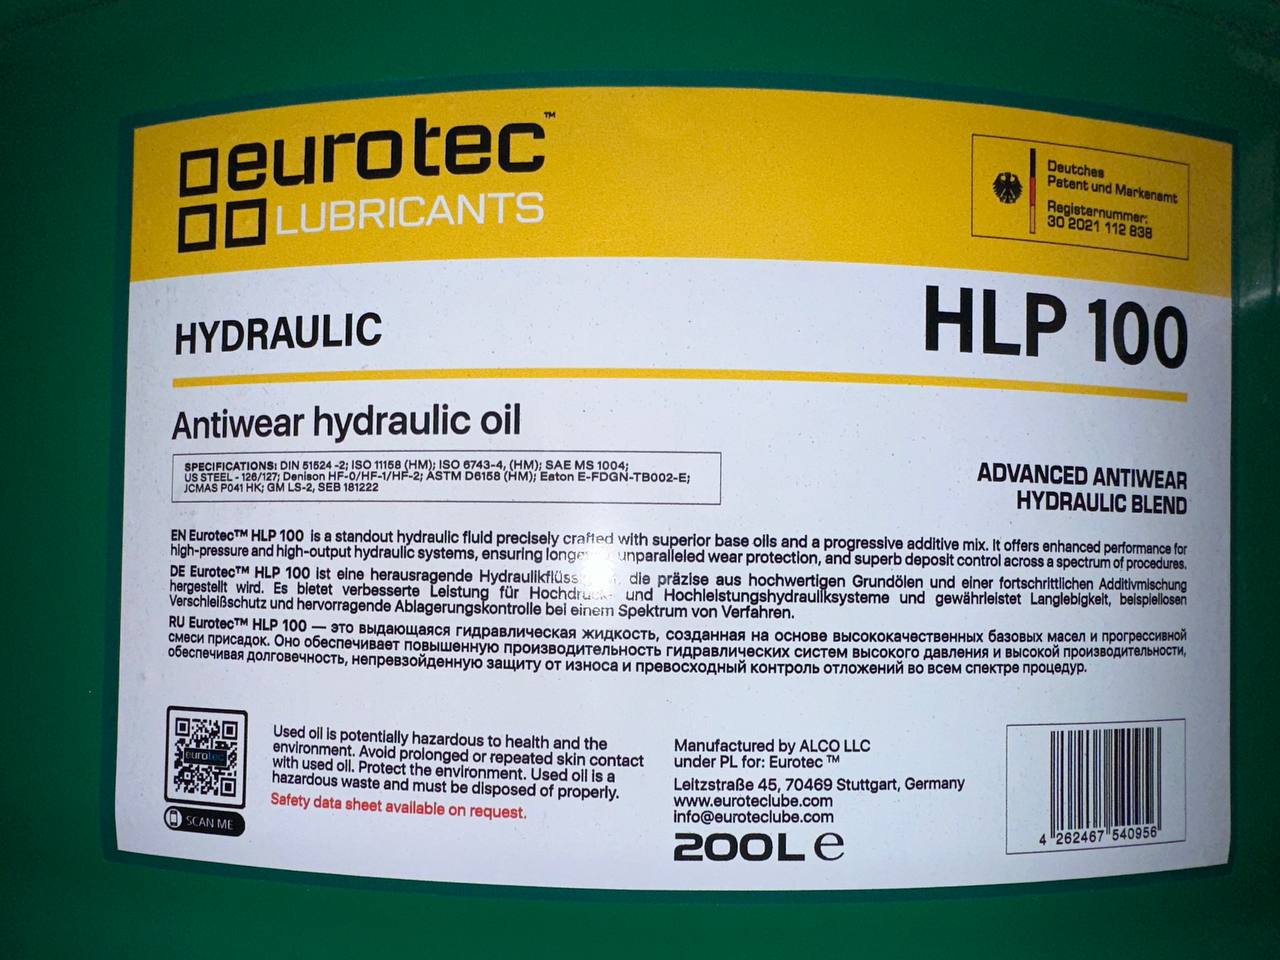 Eurotec Hydraulic HLP 100